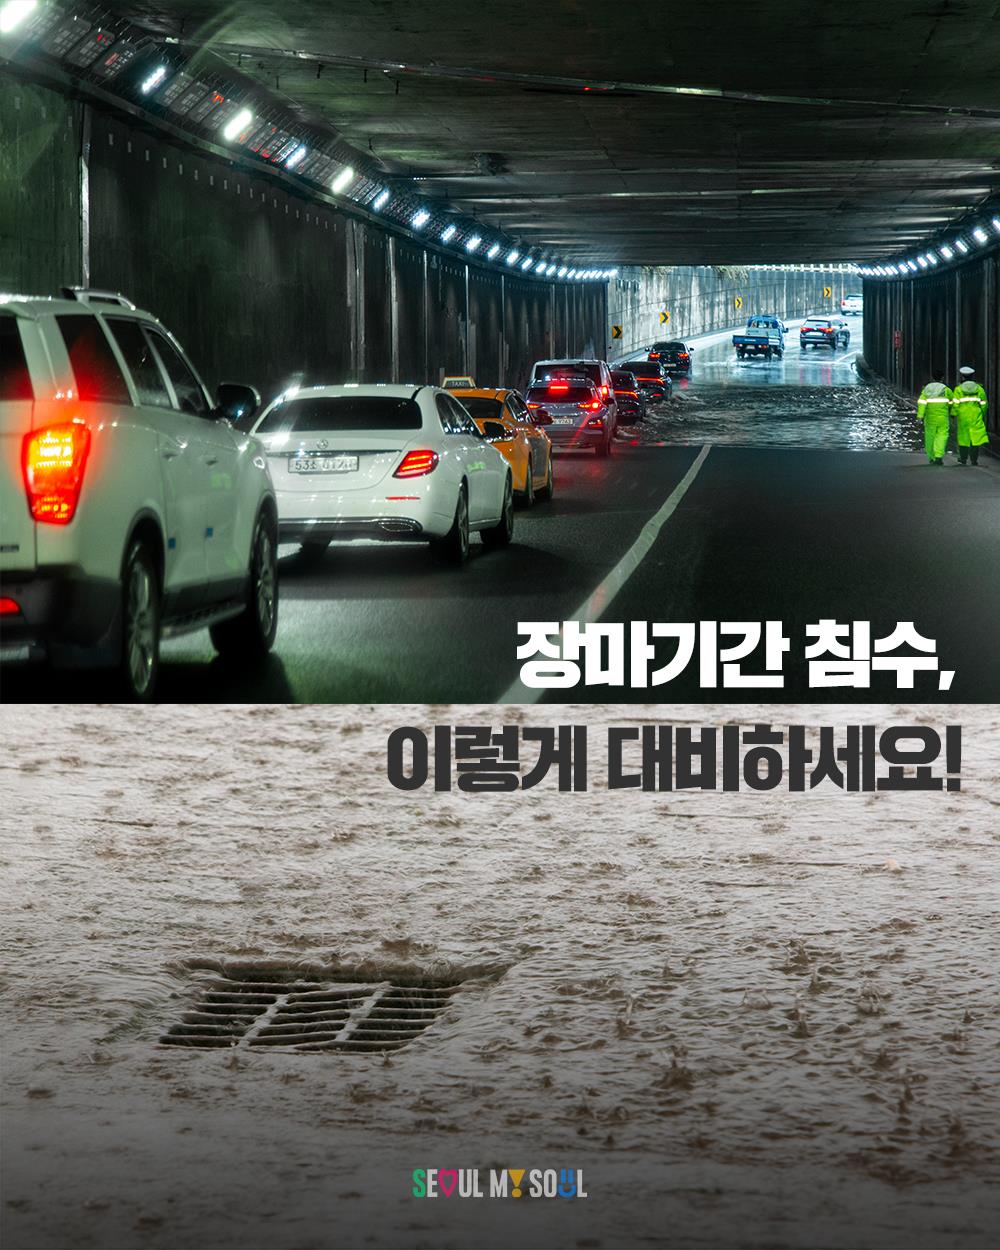 首尔市官方X帐号呼吁民众为雨季洪水做好准备。 X